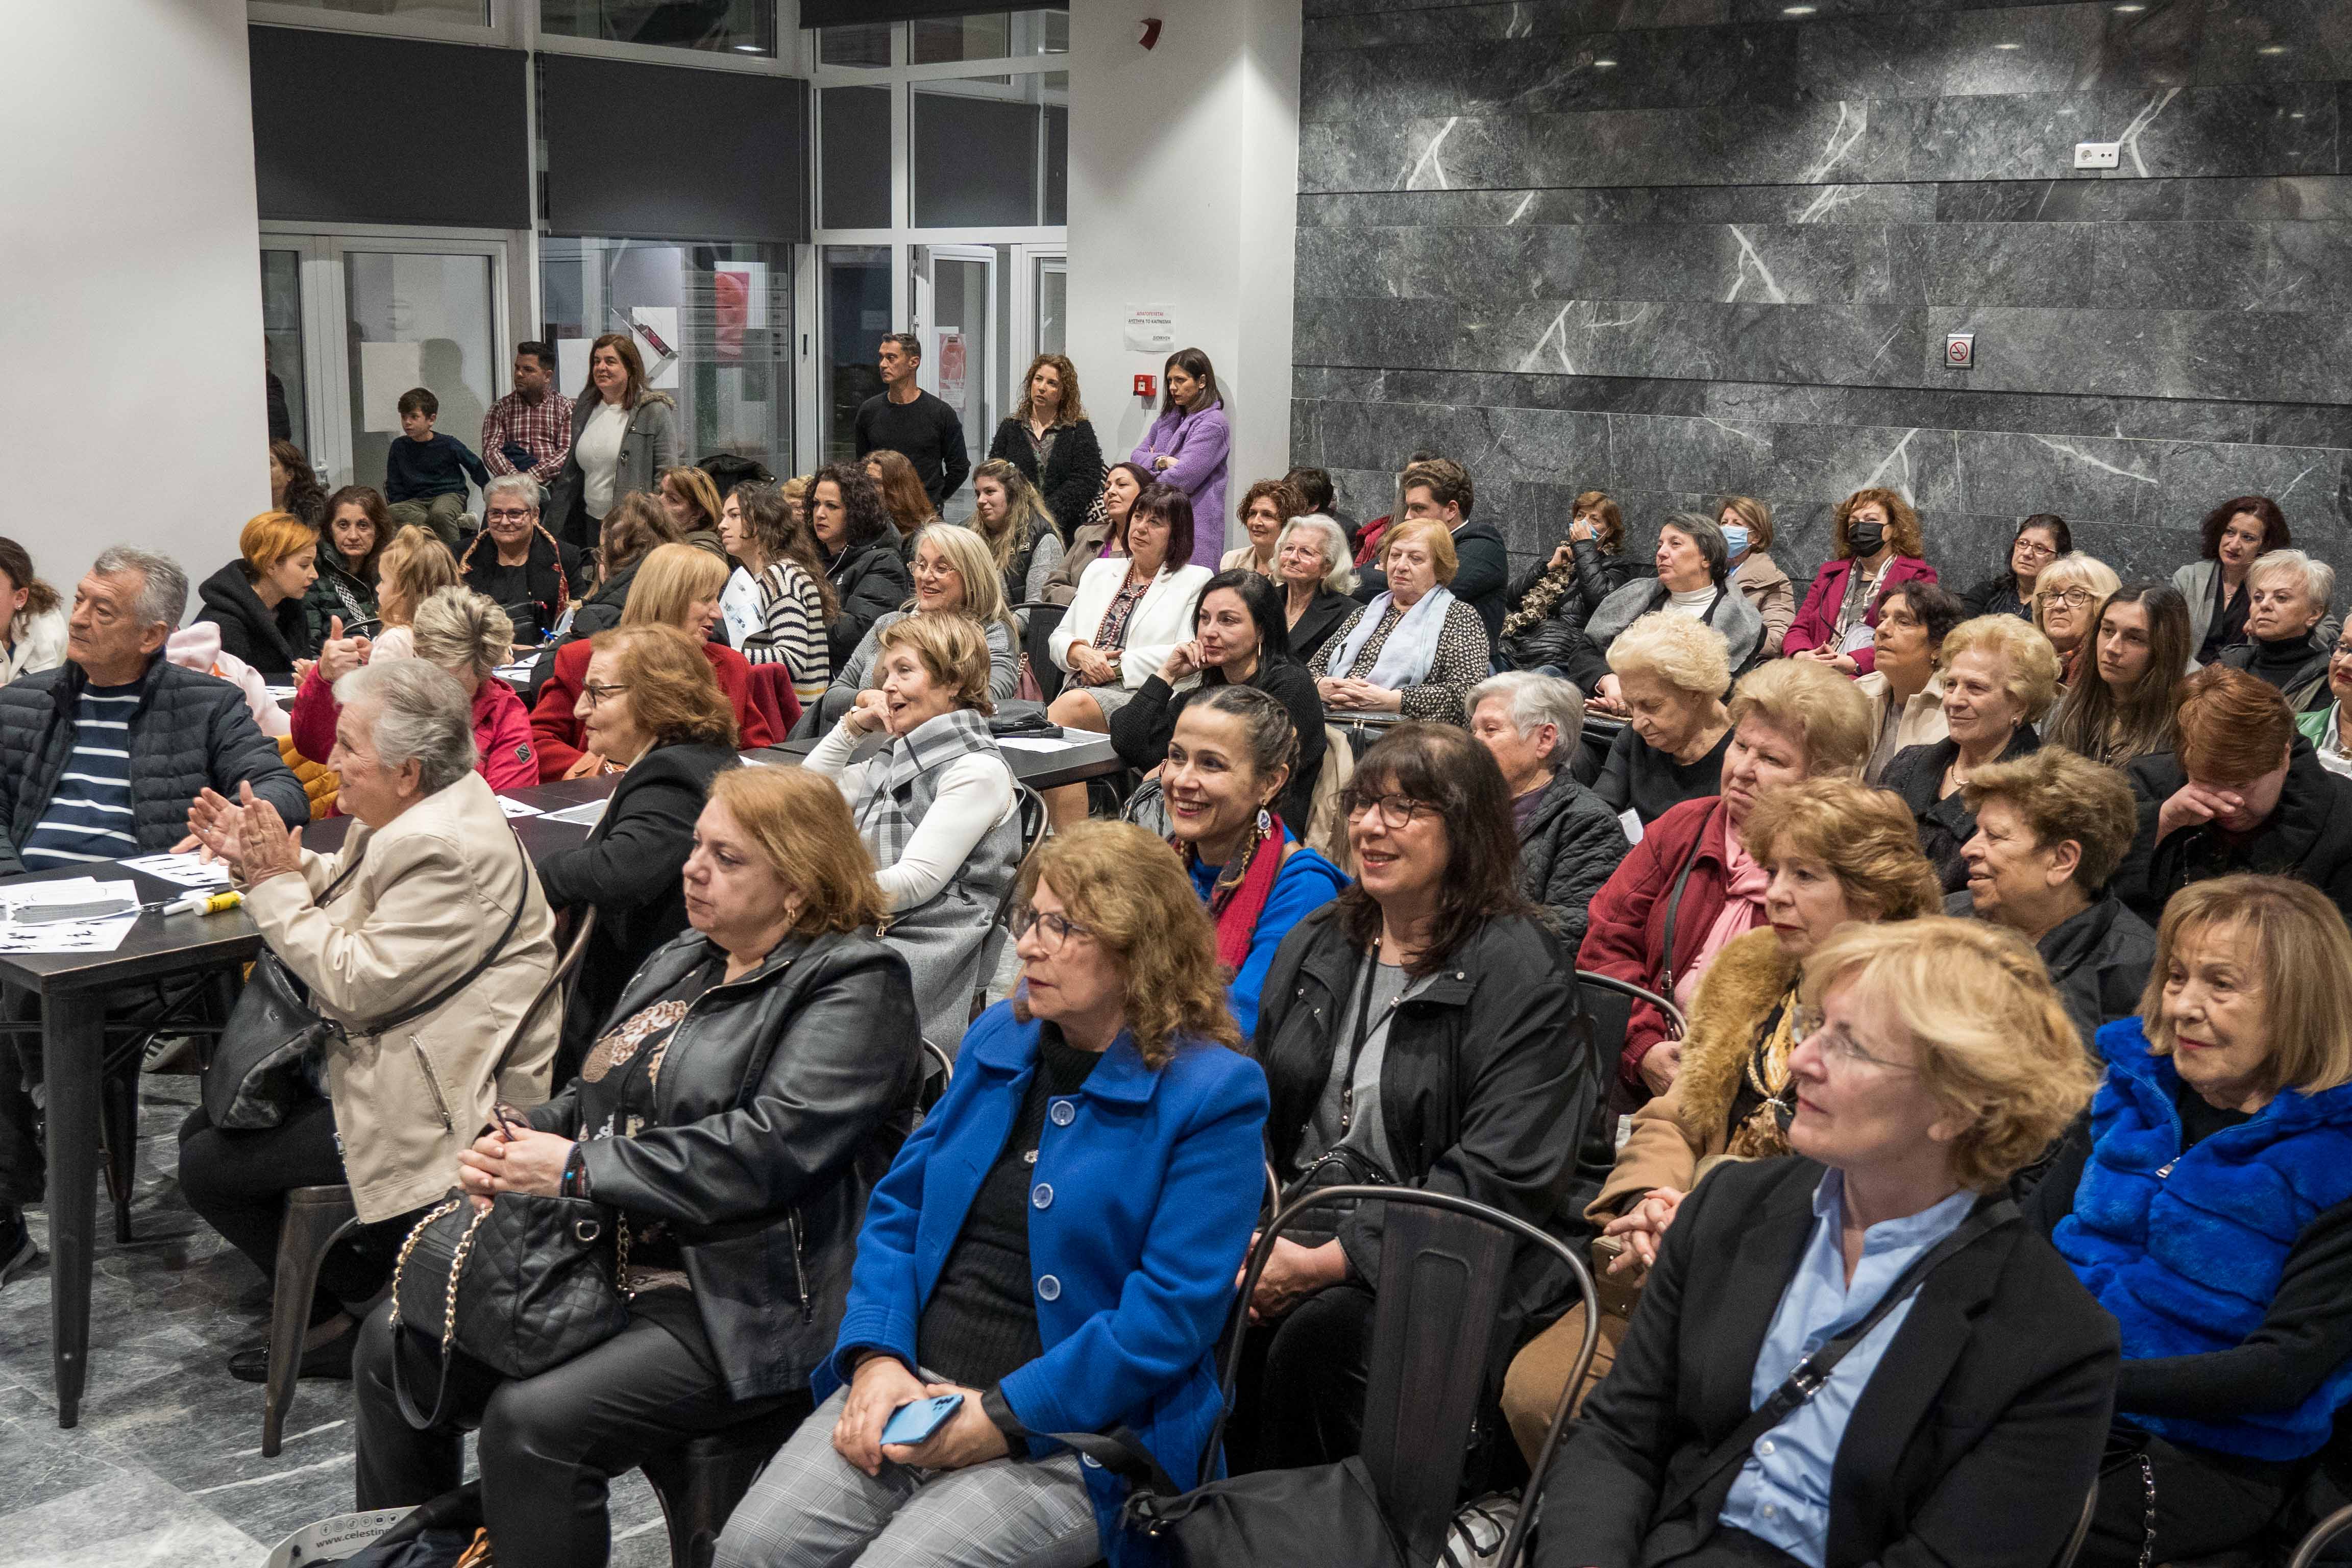 Ο Δήμος Ιλίου τίμησε την Παγκόσμια Ημέρα της Γυναίκας με σειρά εκδηλώσεων